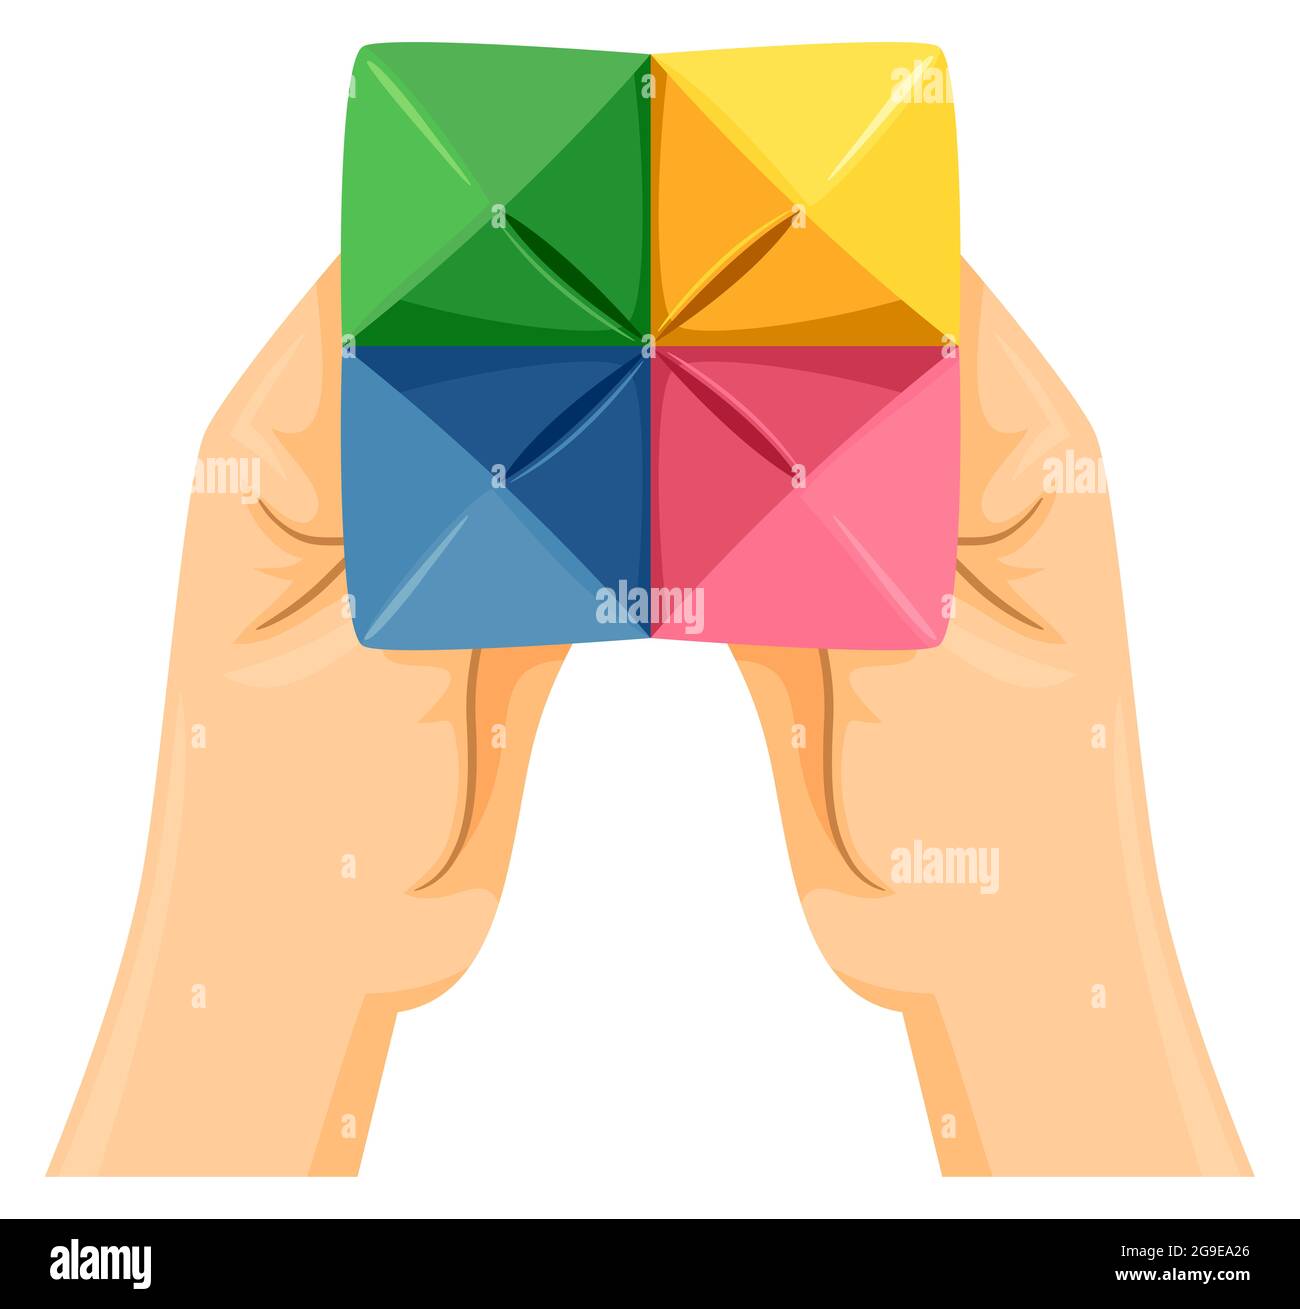 Abbildung der Hände, die einen Papiervorratsteller in verschiedenen Farben halten Stockfoto